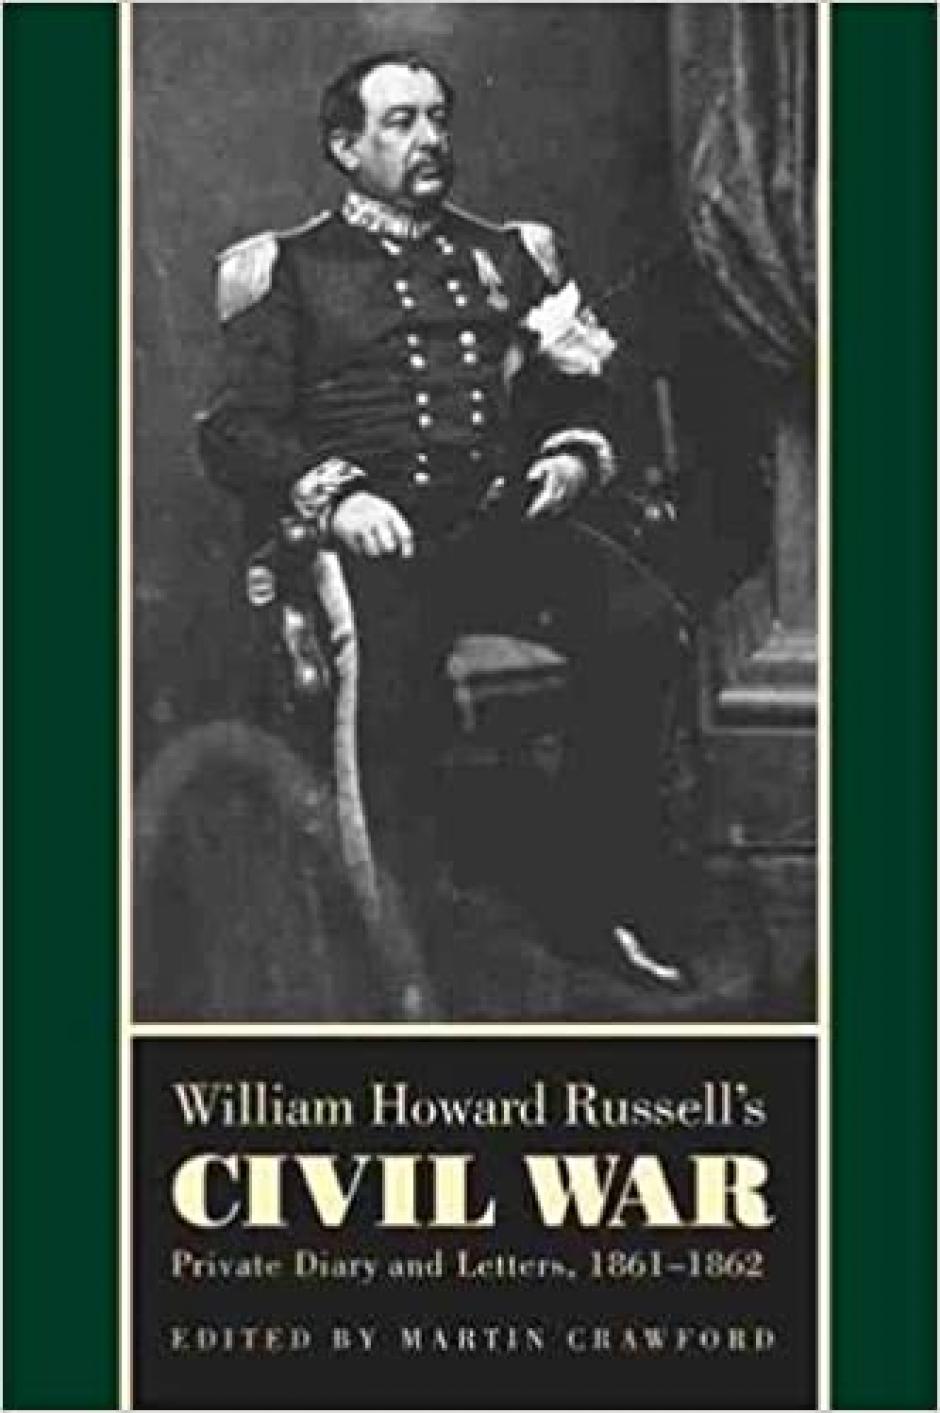 Tapa del libro de William Howard Russell sobre la guerra civil